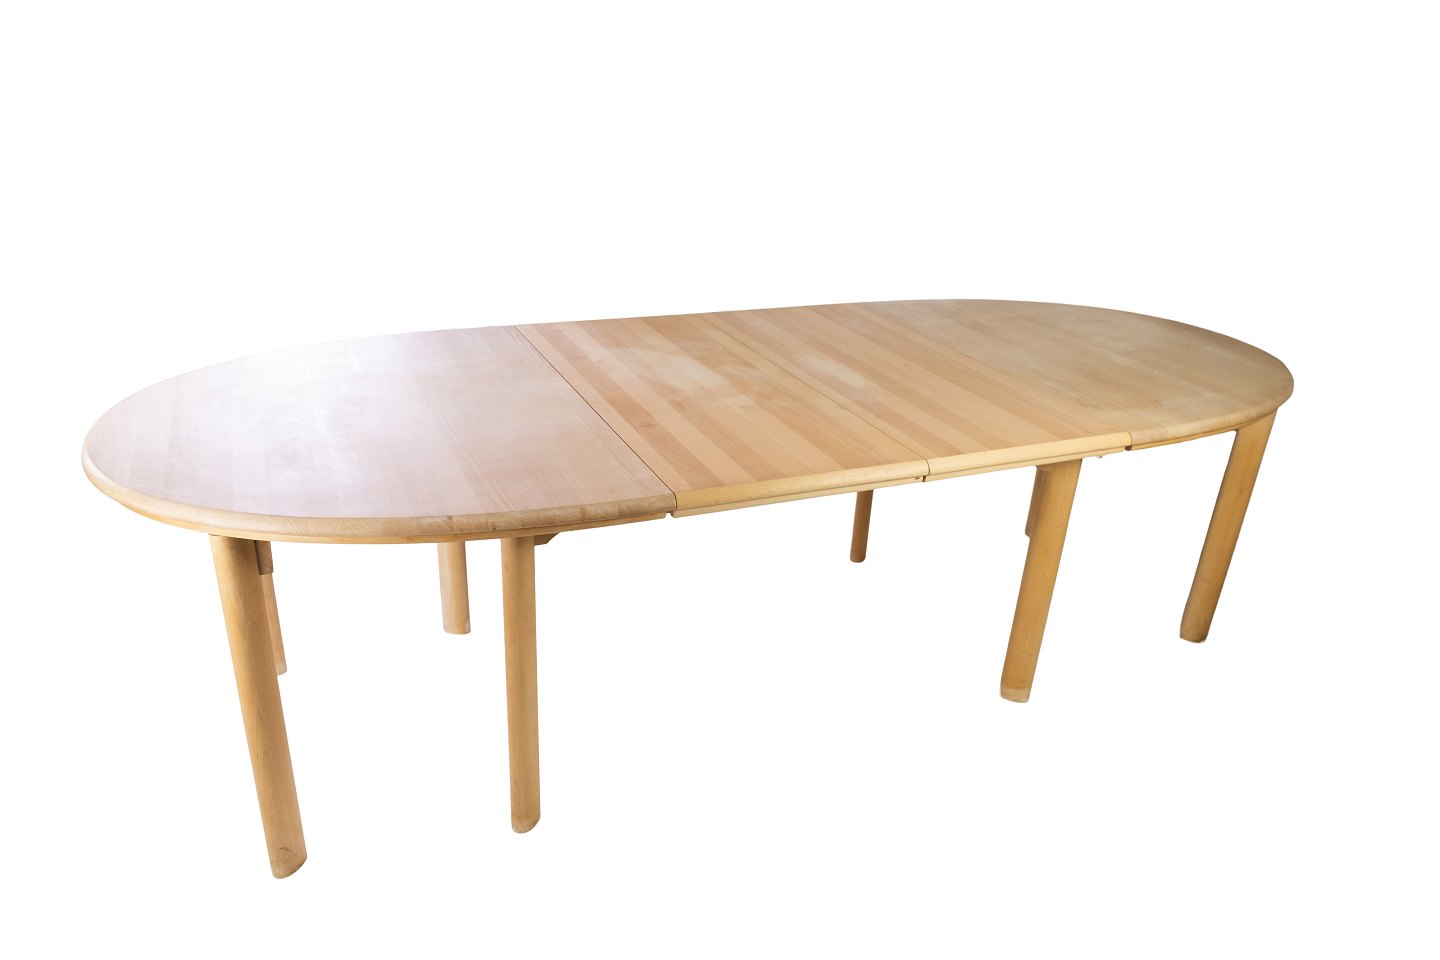 KAD ringen - Spisebord i bøg af dansk design fremstillet af Skovby Møbelfabrik i 1960erne. * Spisebord i bøg af dansk design fremstillet af Skovby Møbelfabrik 1960erne. *